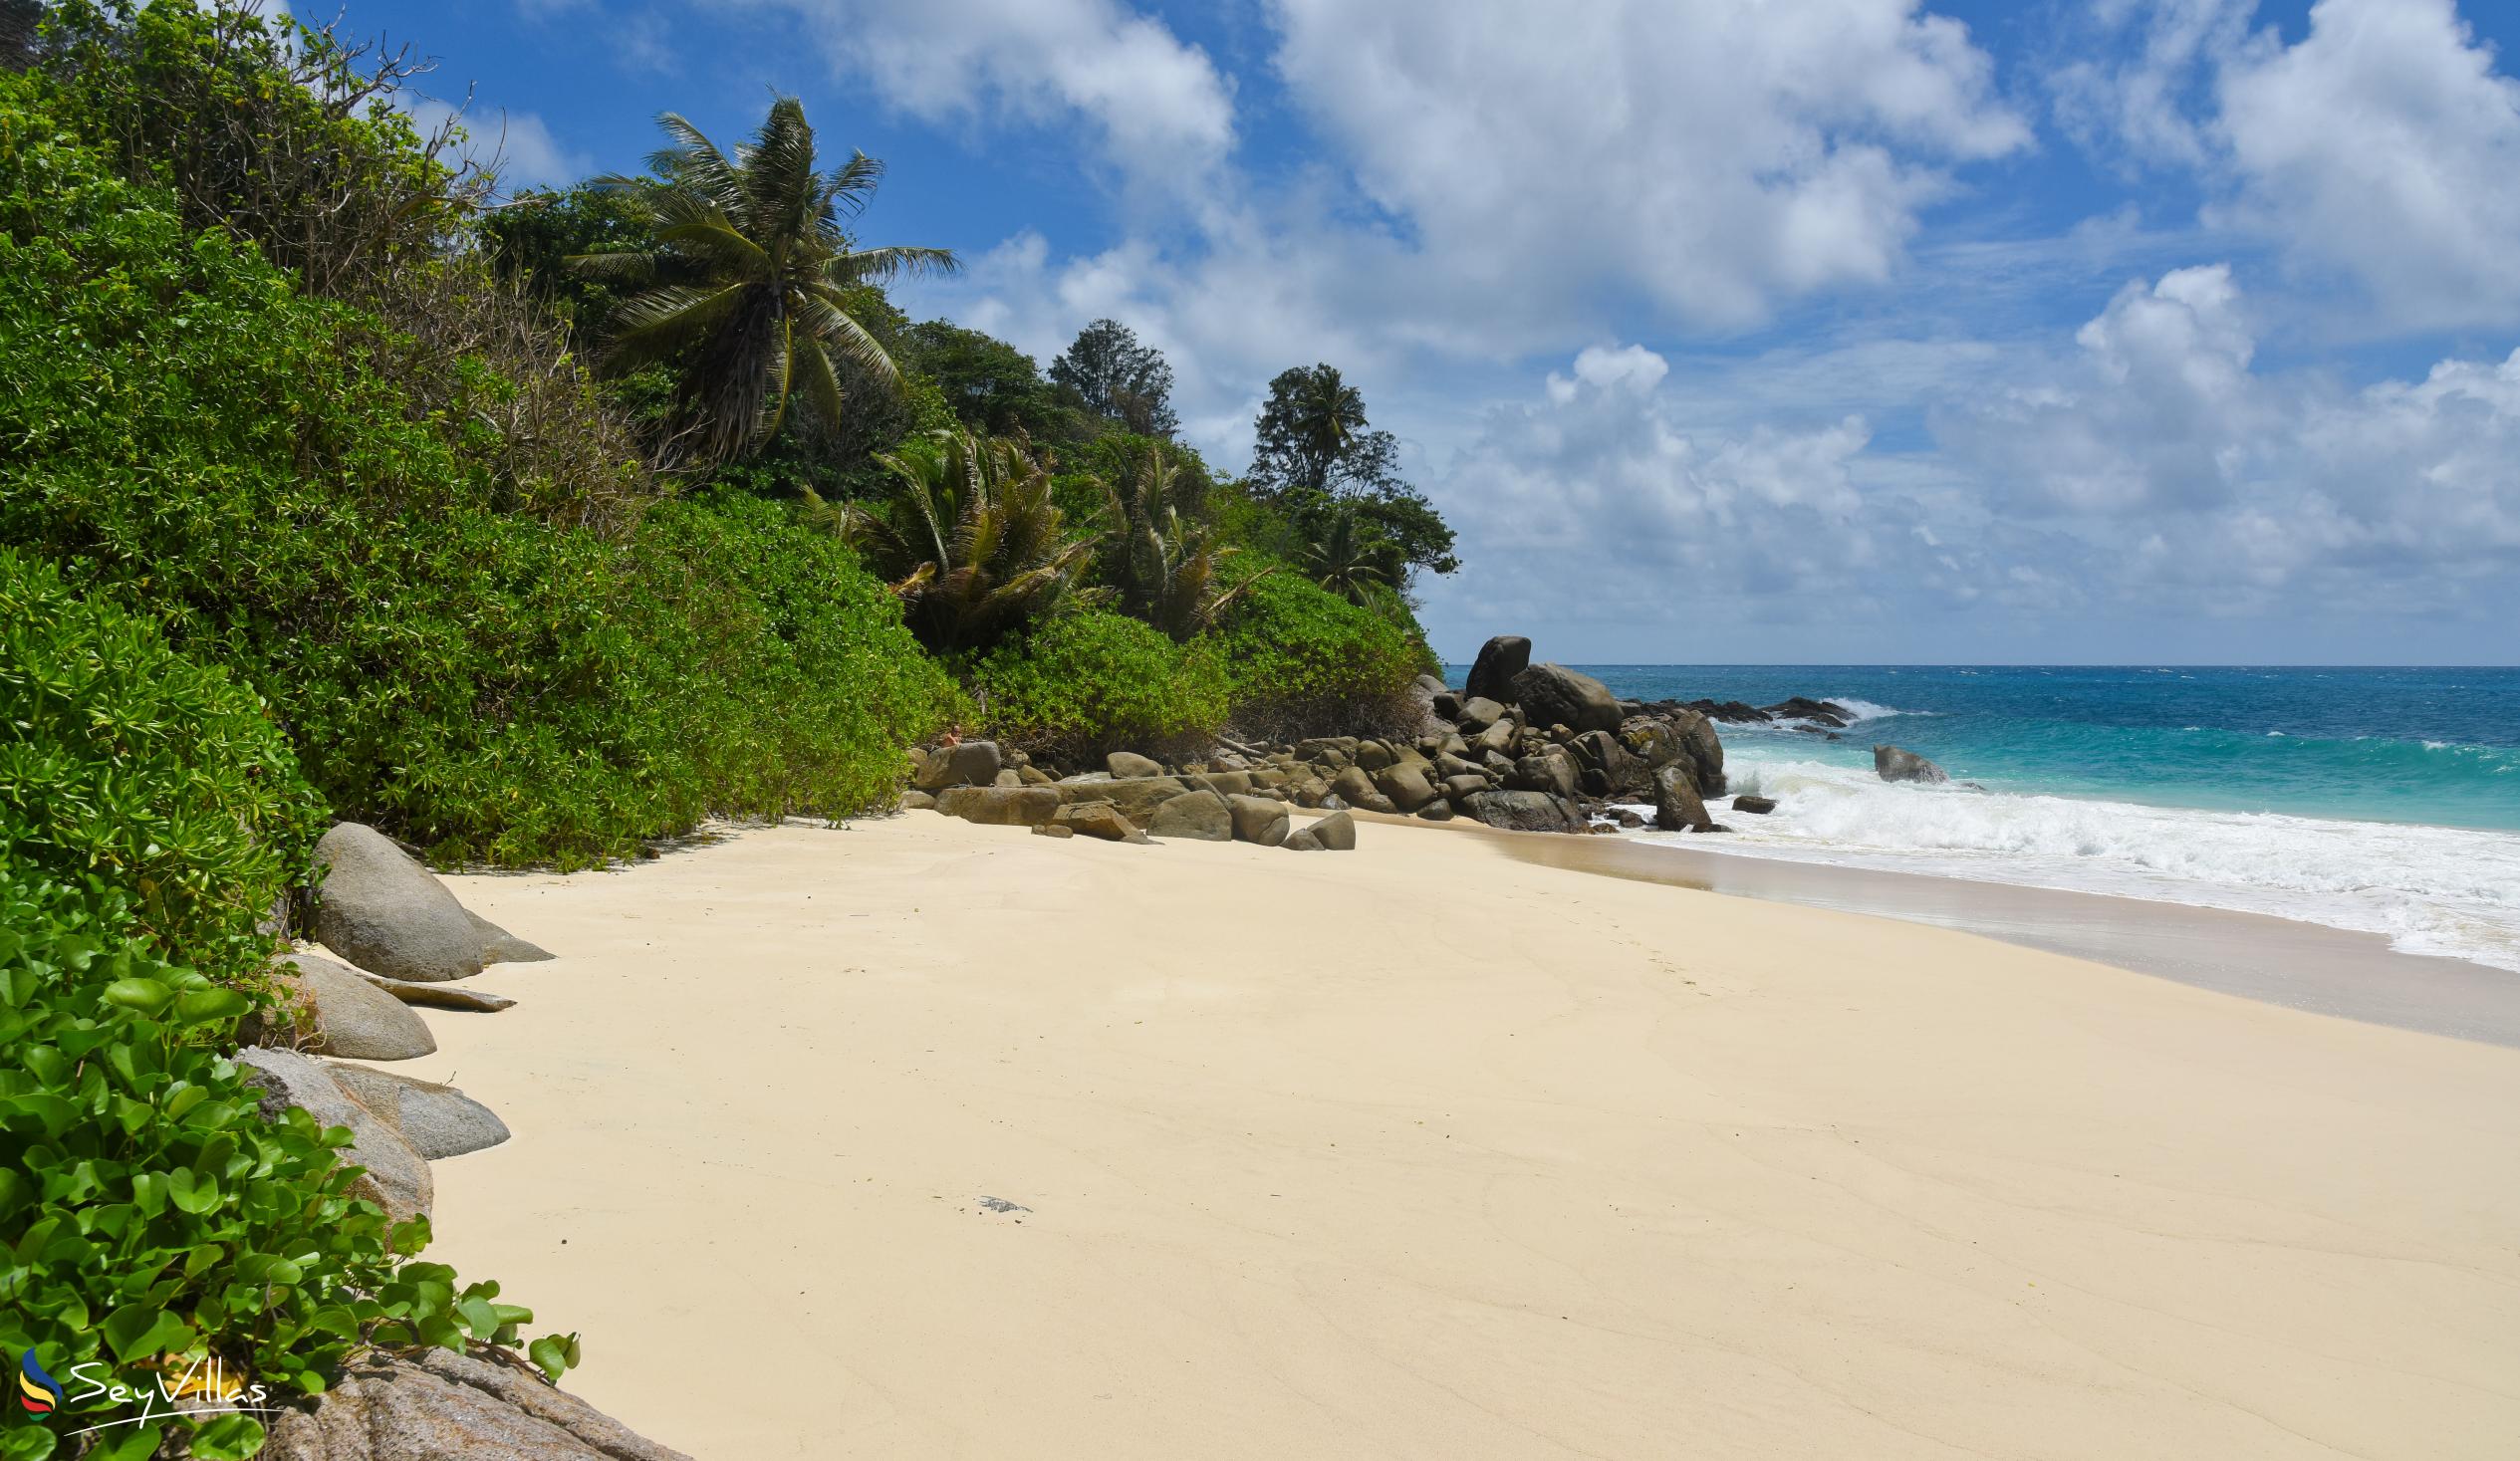 Foto 9: Carana Beach - Mahé (Seychelles)